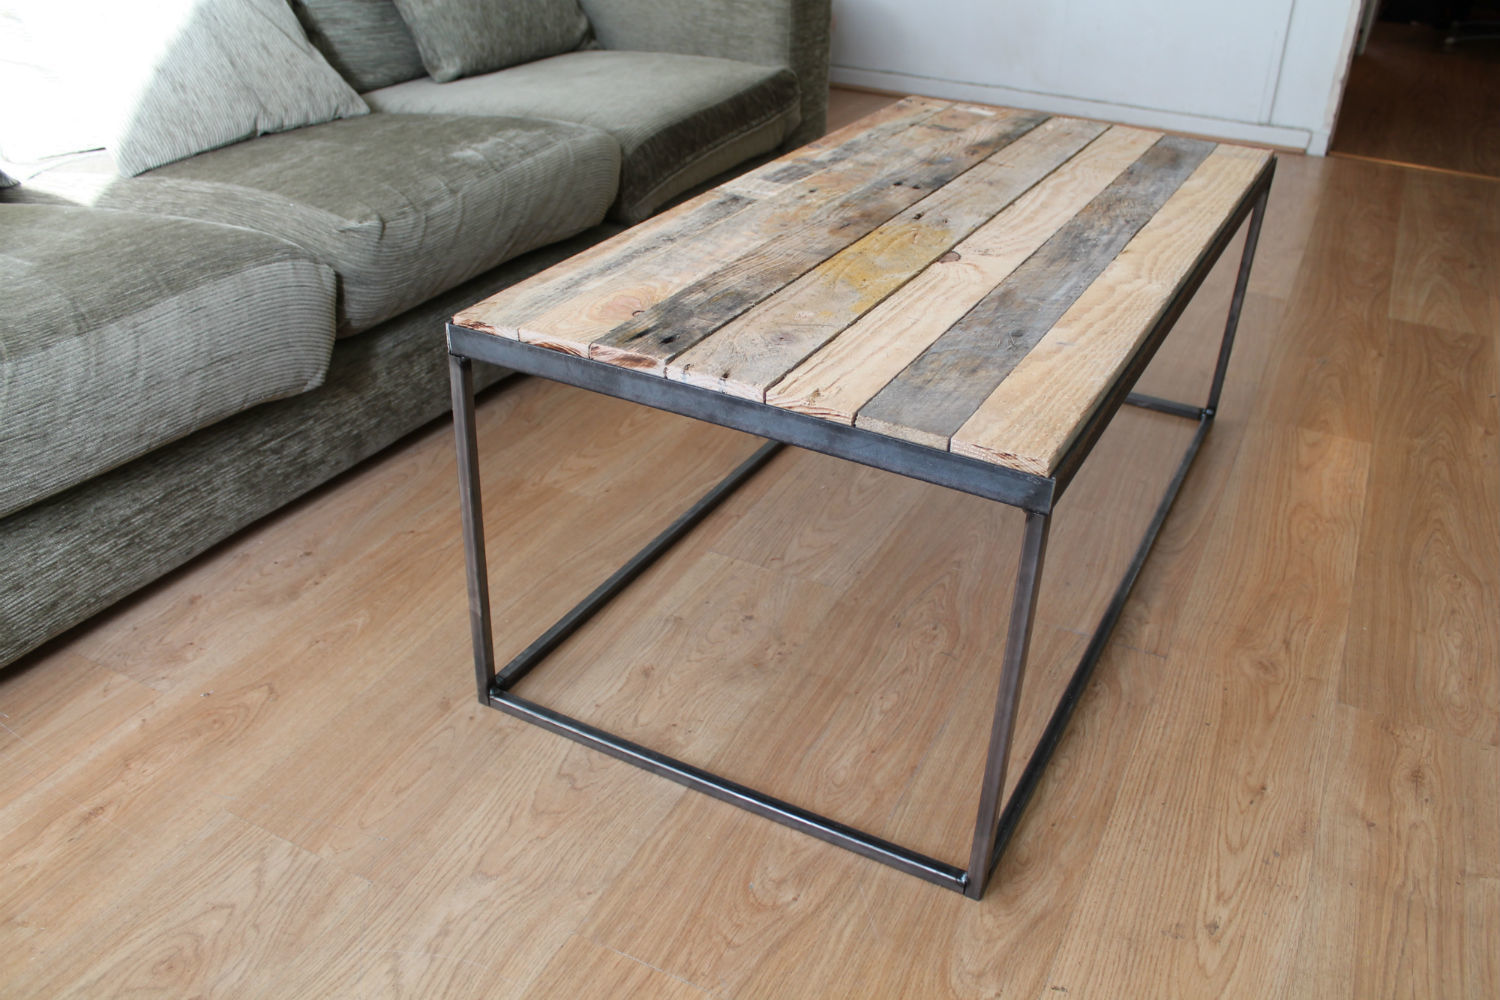 Steel & Reclaimed Timber Coffee Table homify Salas de estilo industrial Accesorios y decoración